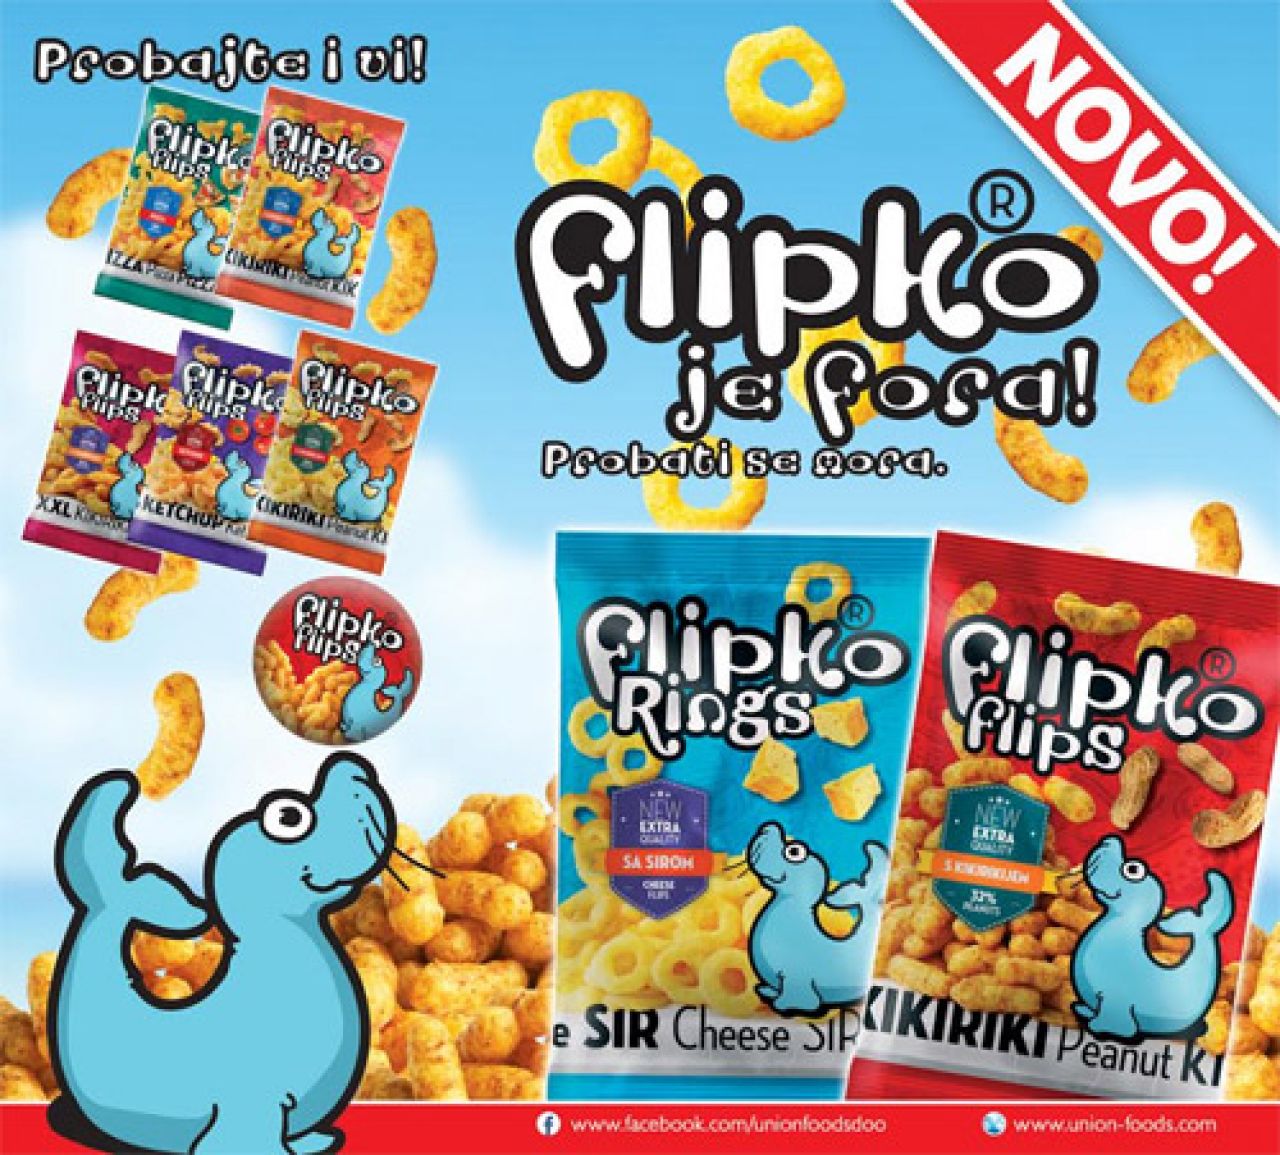 Union Foods dobio IFS certifikat za proizvodnju snack proizvoda Flipko